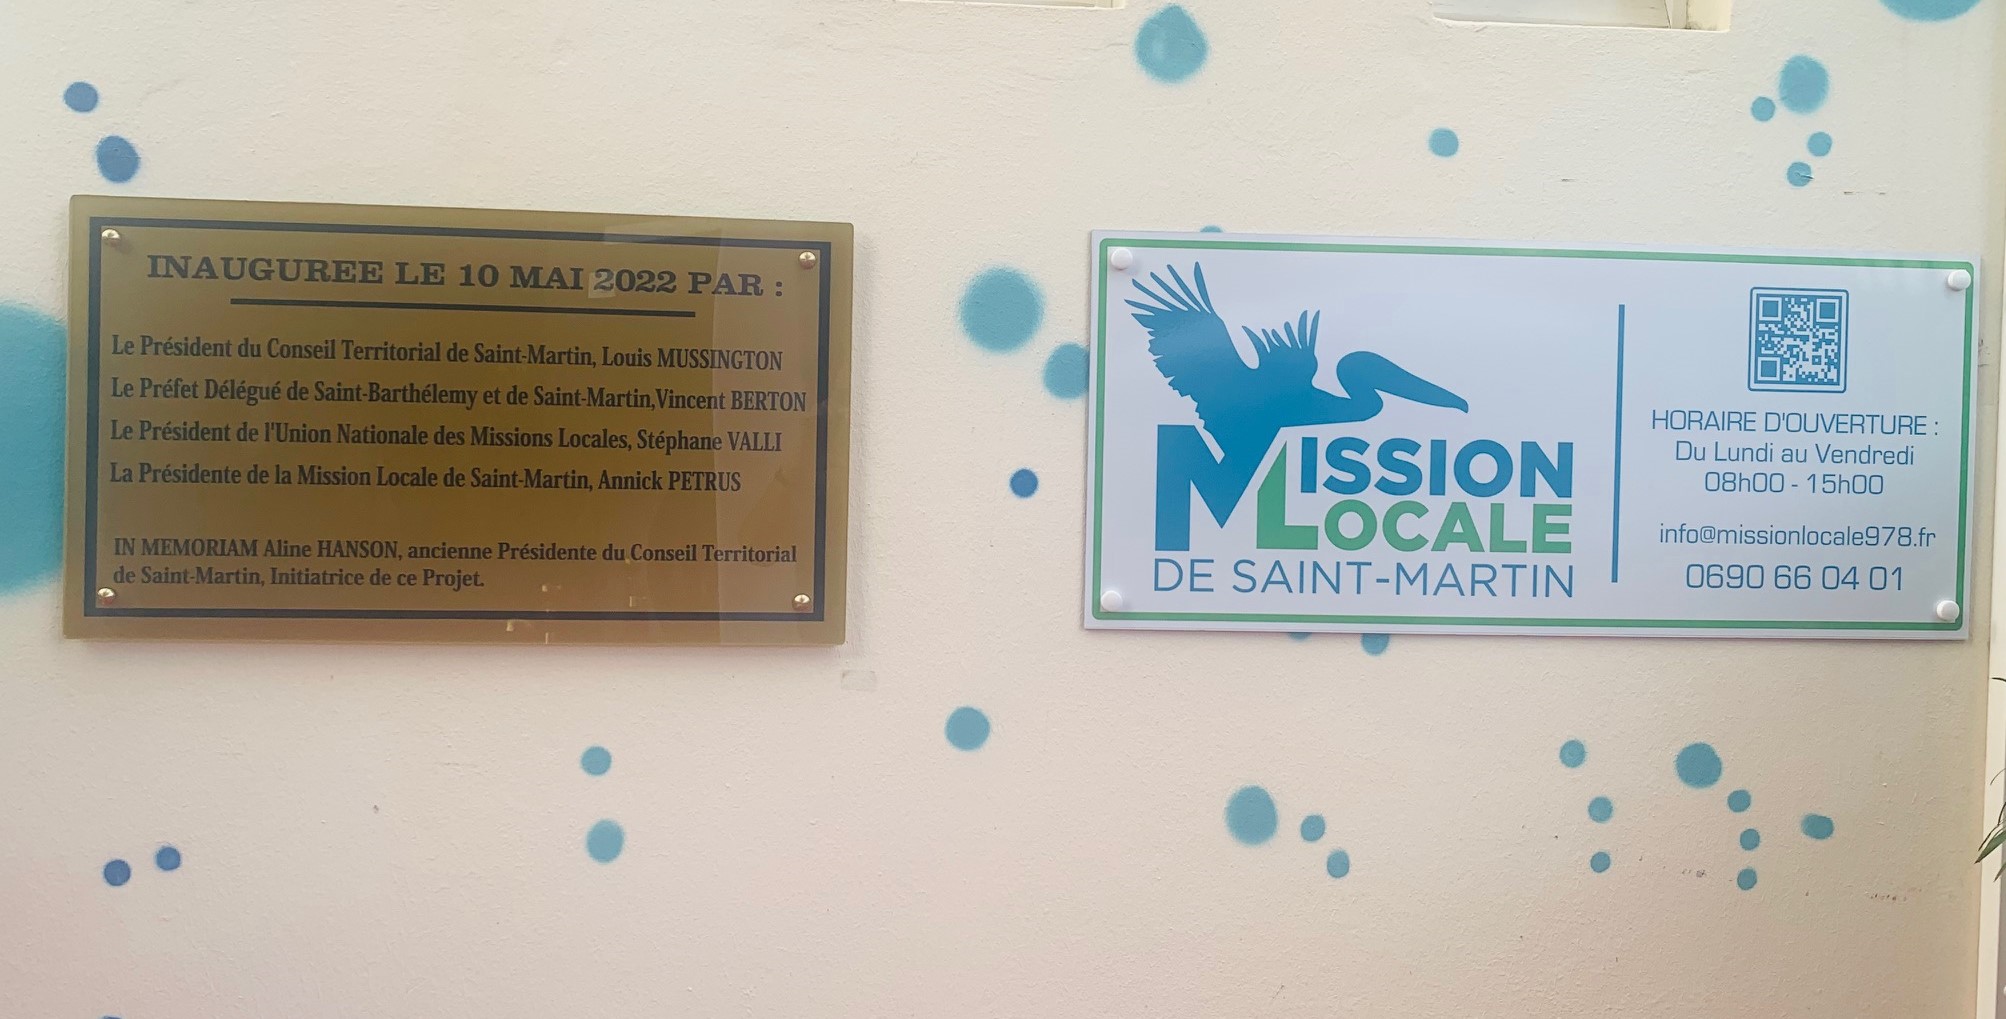 Inauguration de la Mission Locale de Saint-Martin !